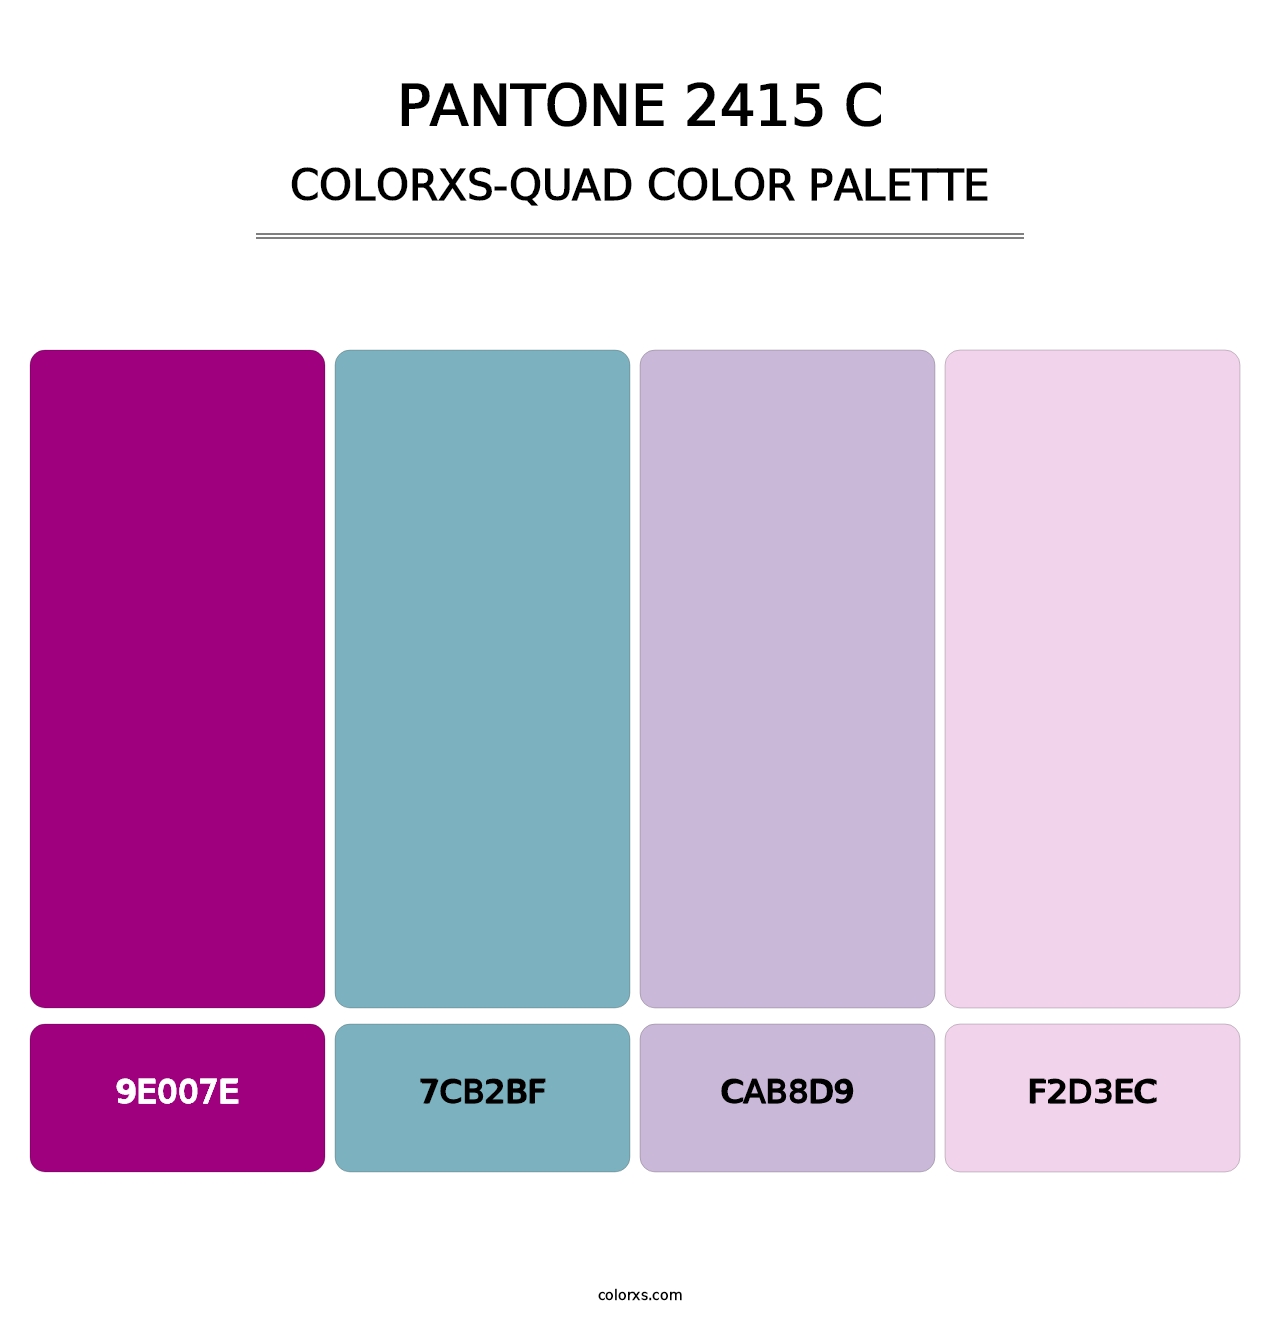 PANTONE 2415 C - Colorxs Quad Palette